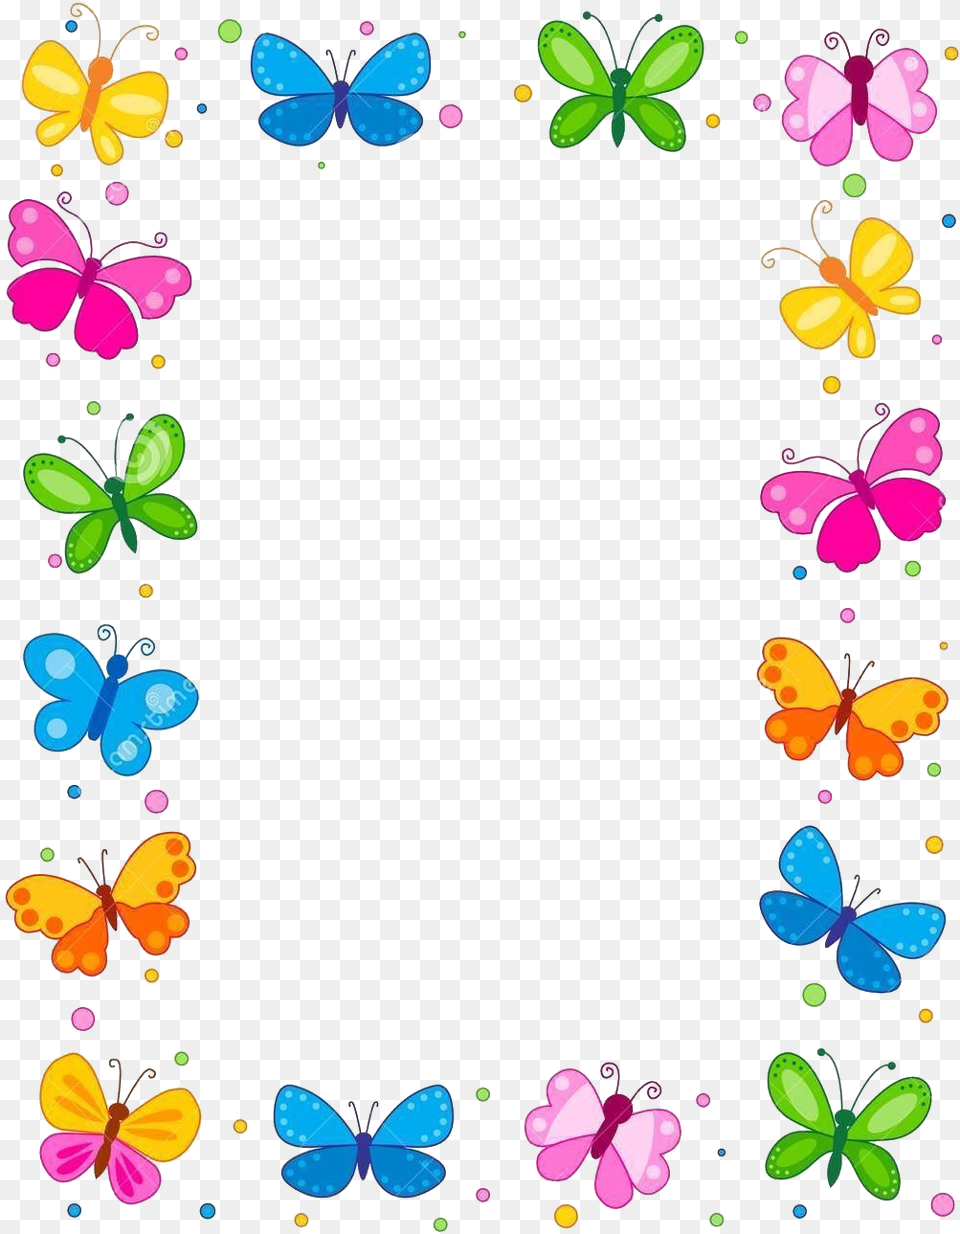 Flower Border Designs Project Flower Border Design, Art, Floral Design, Graphics, Pattern Free Png Download